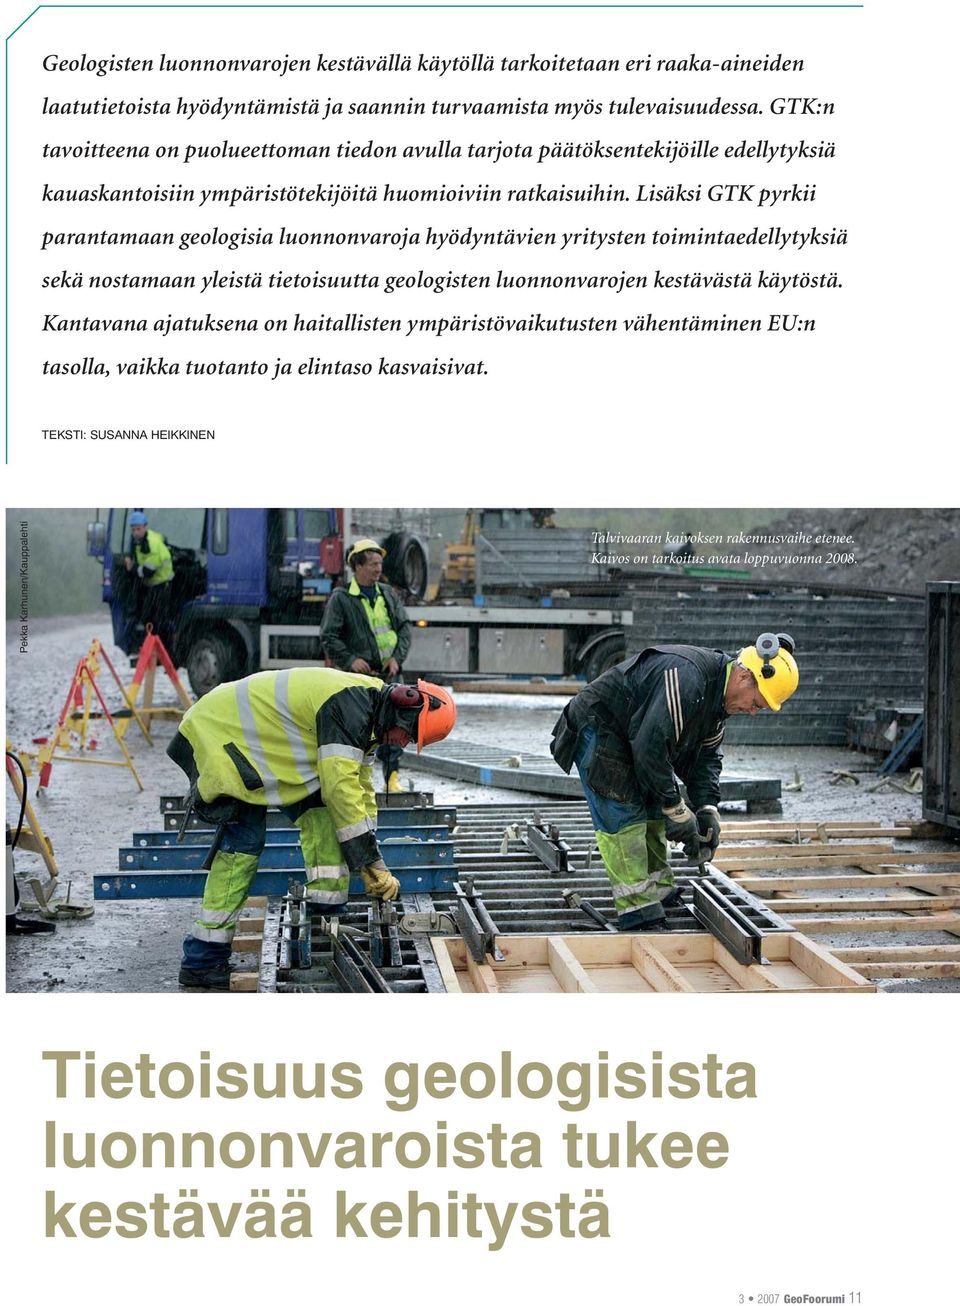 Lisäksi GTK pyrkii parantamaan geologisia luonnonvaroja hyödyntävien yritysten toimintaedellytyksiä sekä nostamaan yleistä tietoisuutta geologisten luonnonvarojen kestävästä käytöstä.